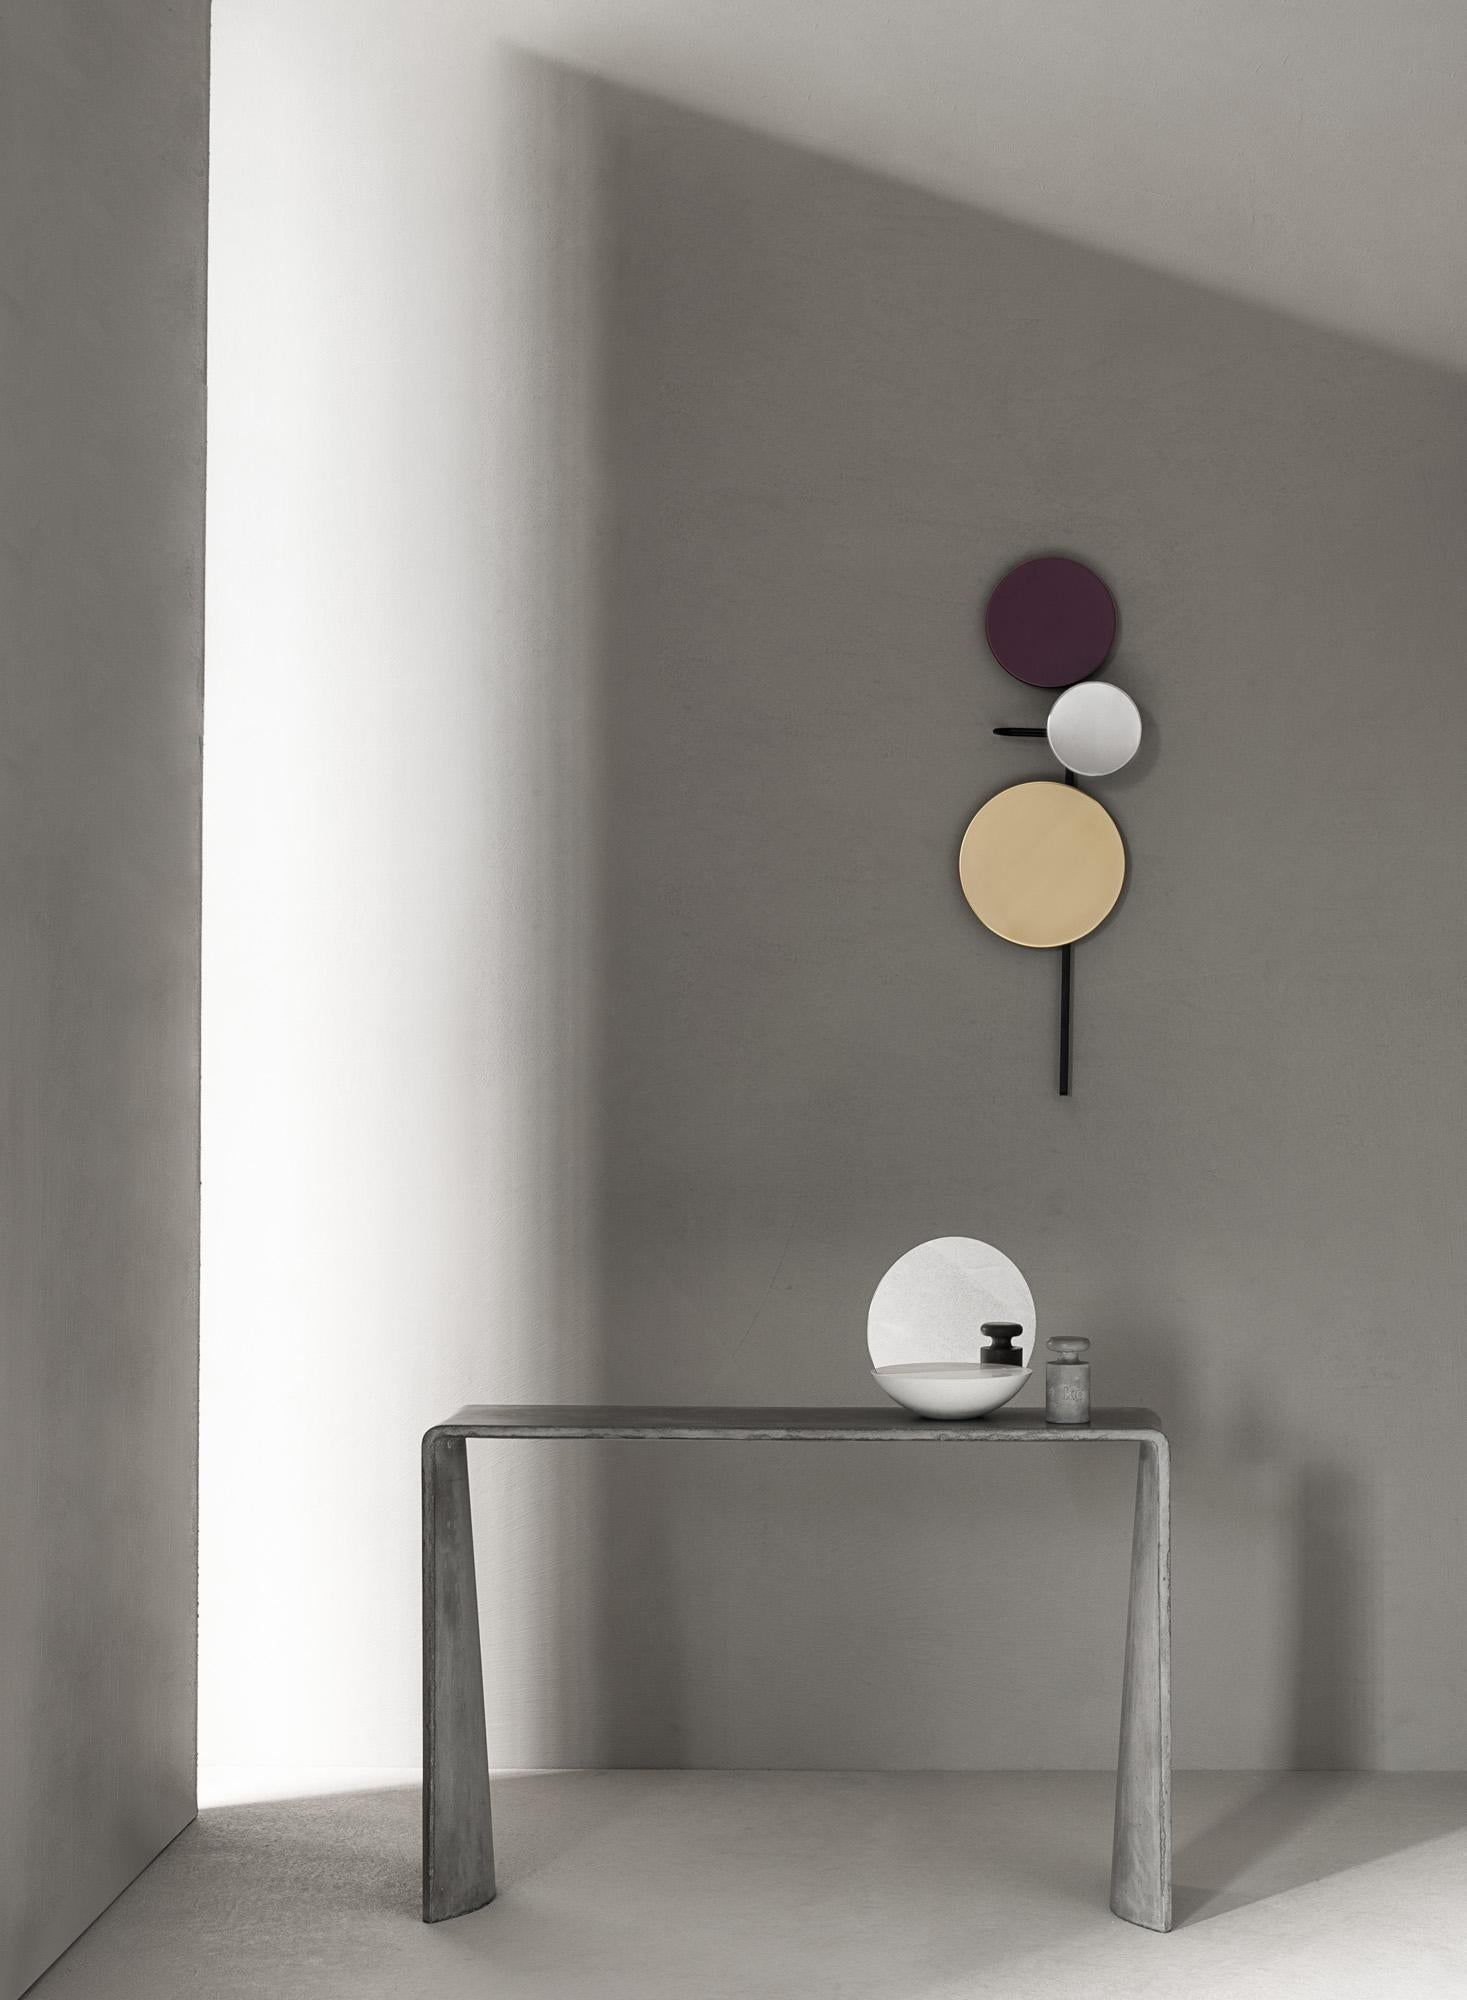 La ligne Tadao, créée en hommage au célèbre architecte avec lequel nous partageons une approche minimaliste et l'utilisation créative du matériau, est la synthèse parfaite de notre philosophie : notre étude de la structure transforme le matériau en